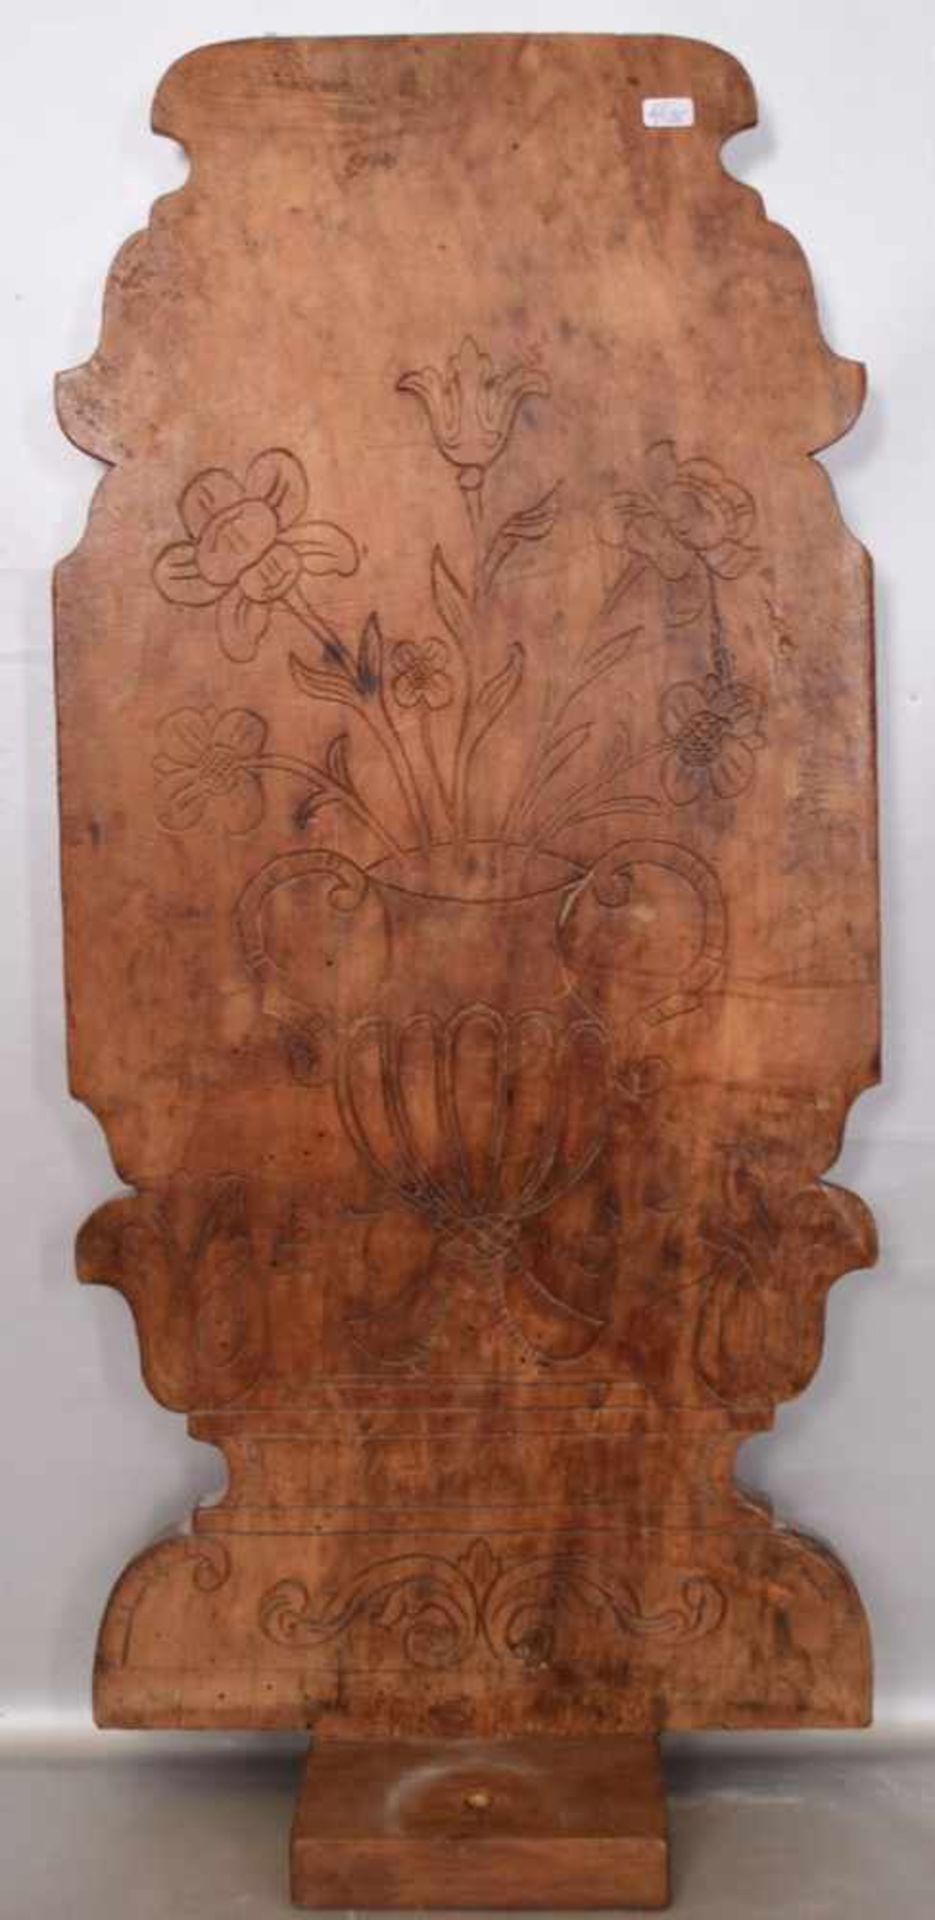 HolzreliefHartholz, geschnitzt, mit Vase, Ranken und Ornamenten, dat. 1757, 62 X 29 cm